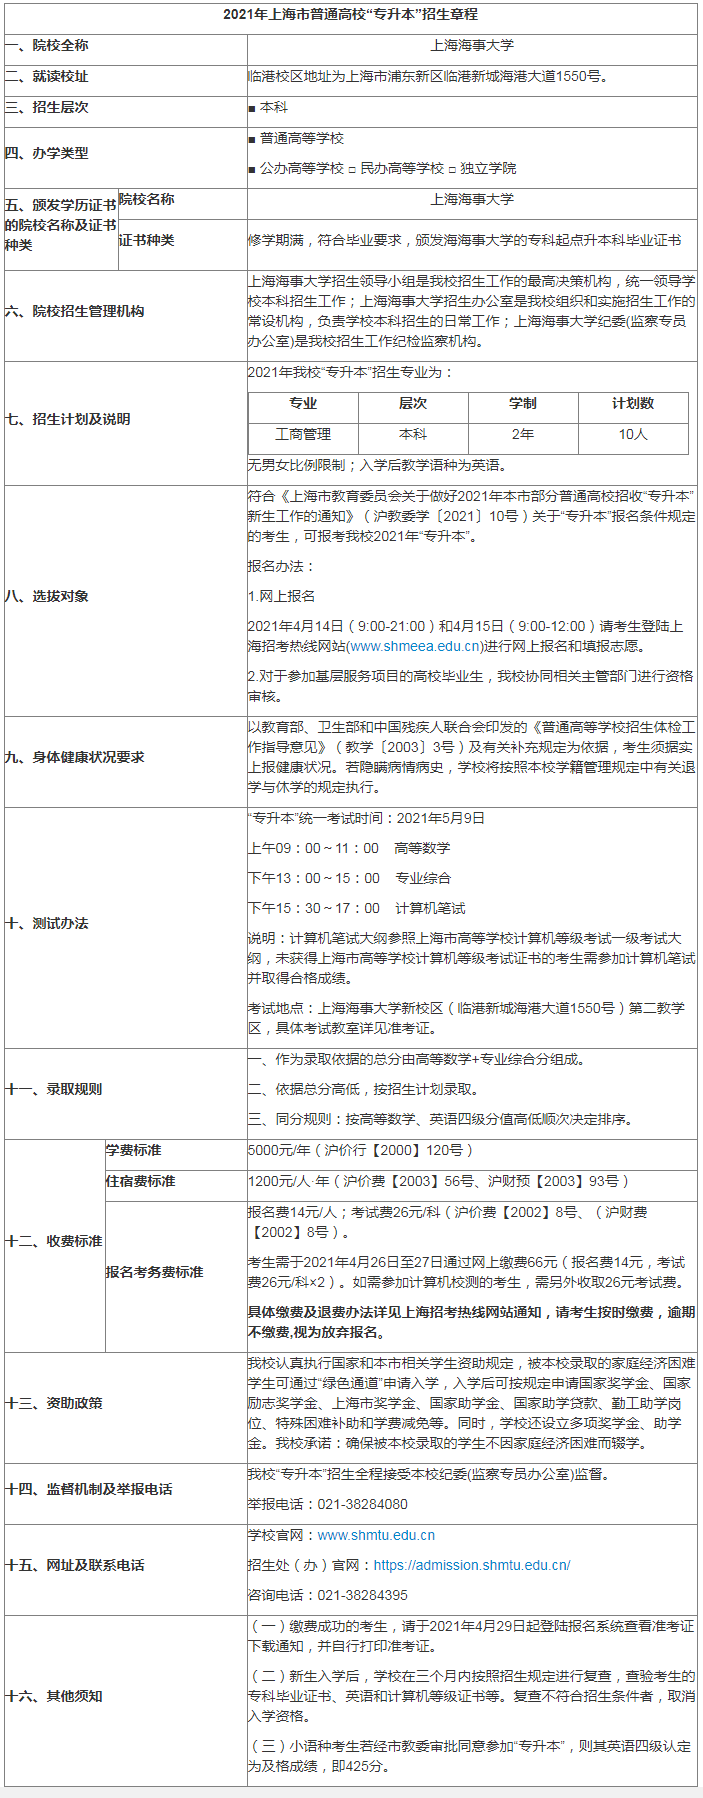 上海海事大学专升本招生章程